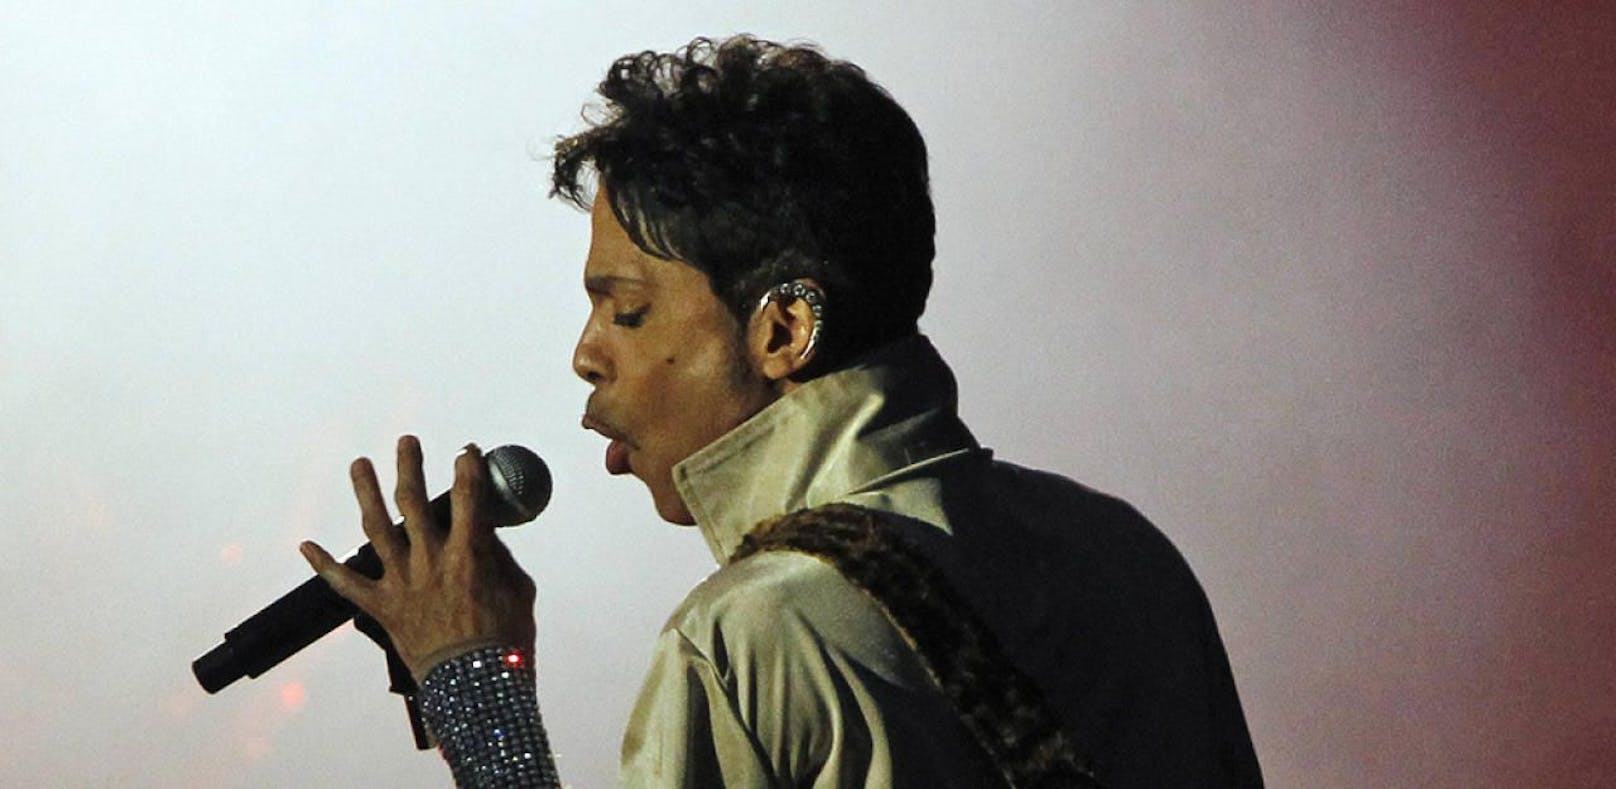 Neues Prince-Album wird doch nicht veröffentlicht